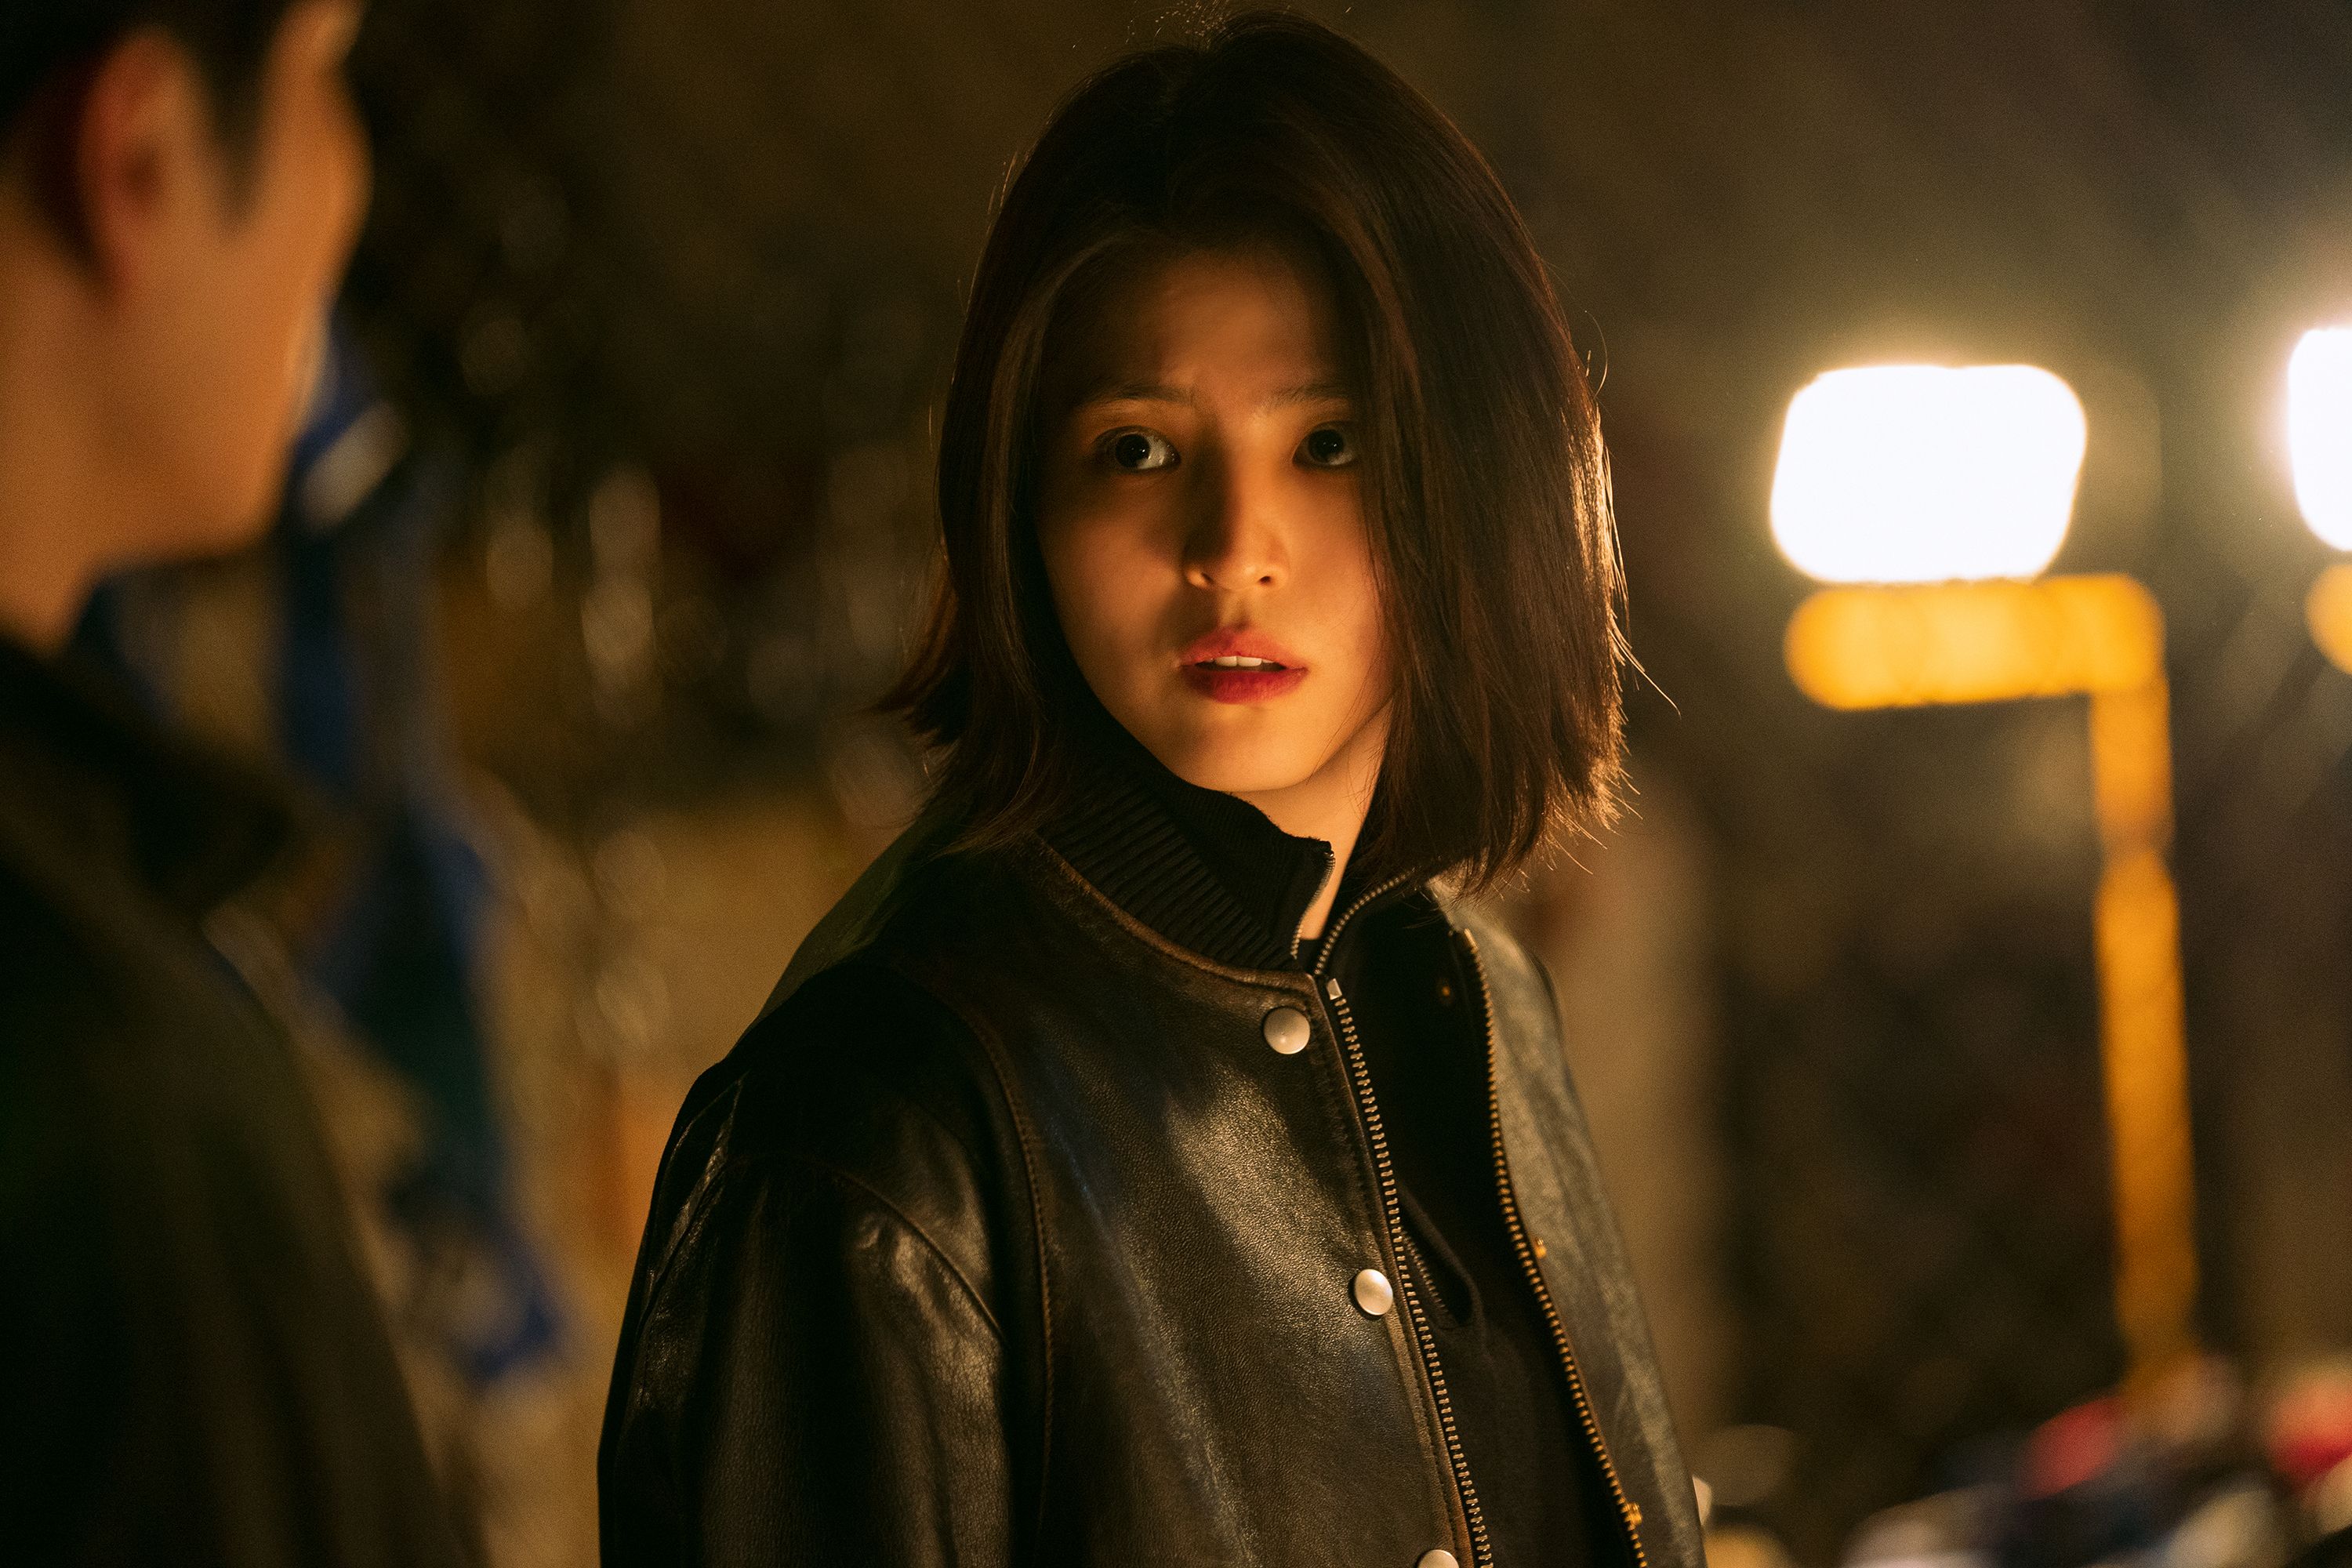 Las mejores series coreanas disponibles en Netflix ahora - Cinéfilos